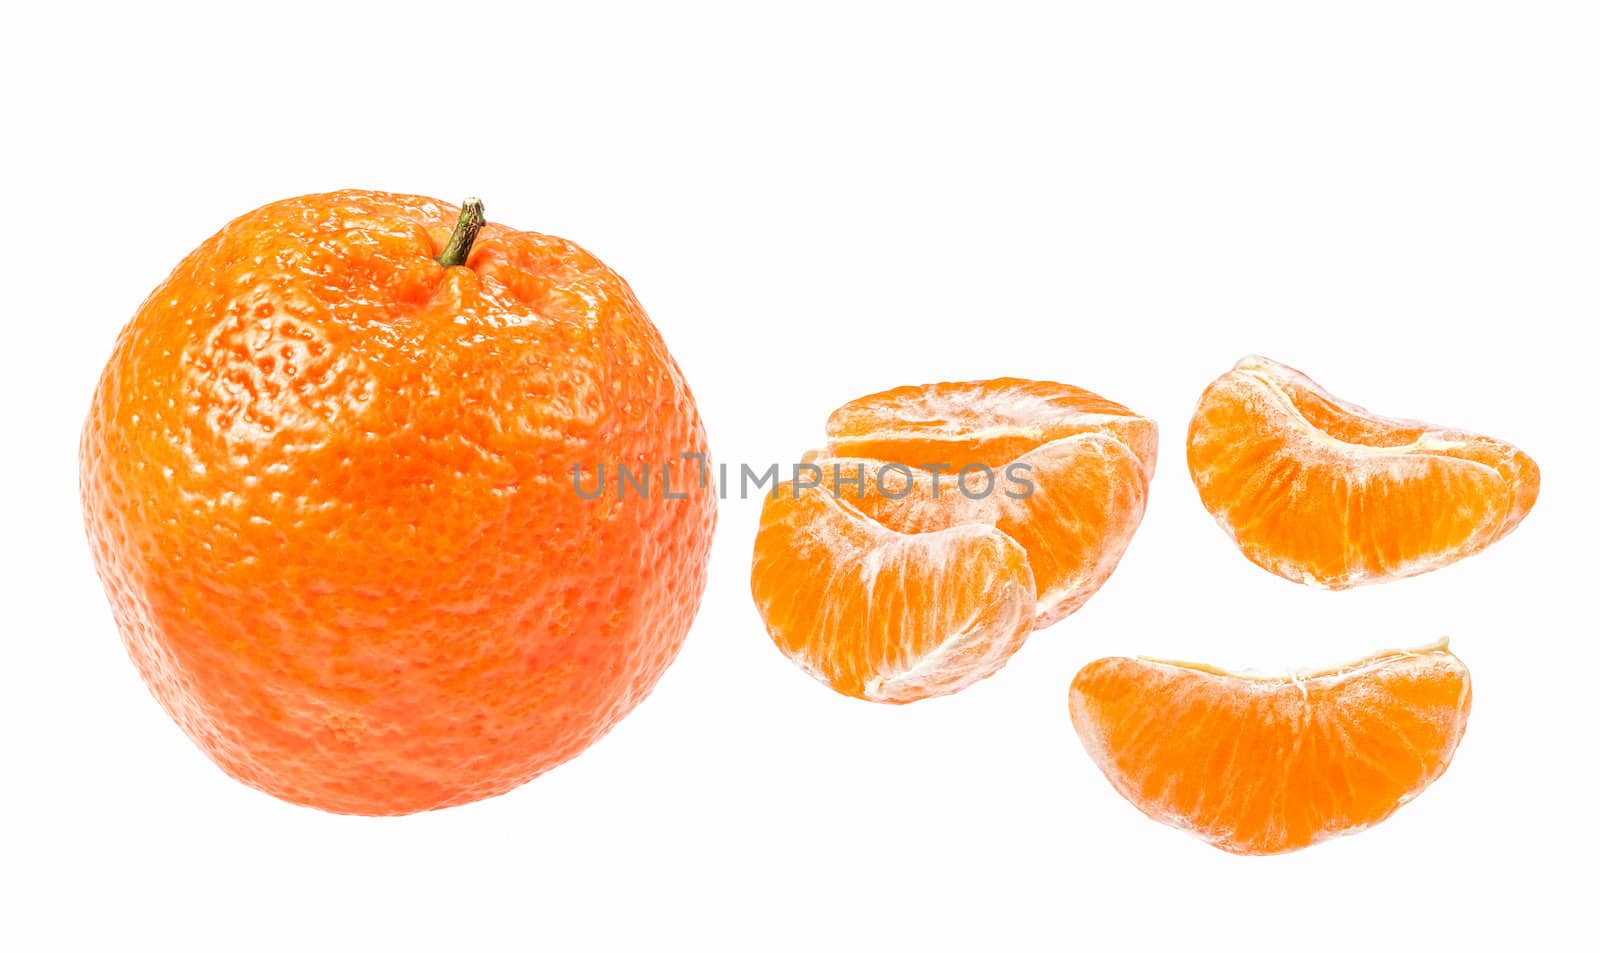 Orange tangerine fruit isolated on white background